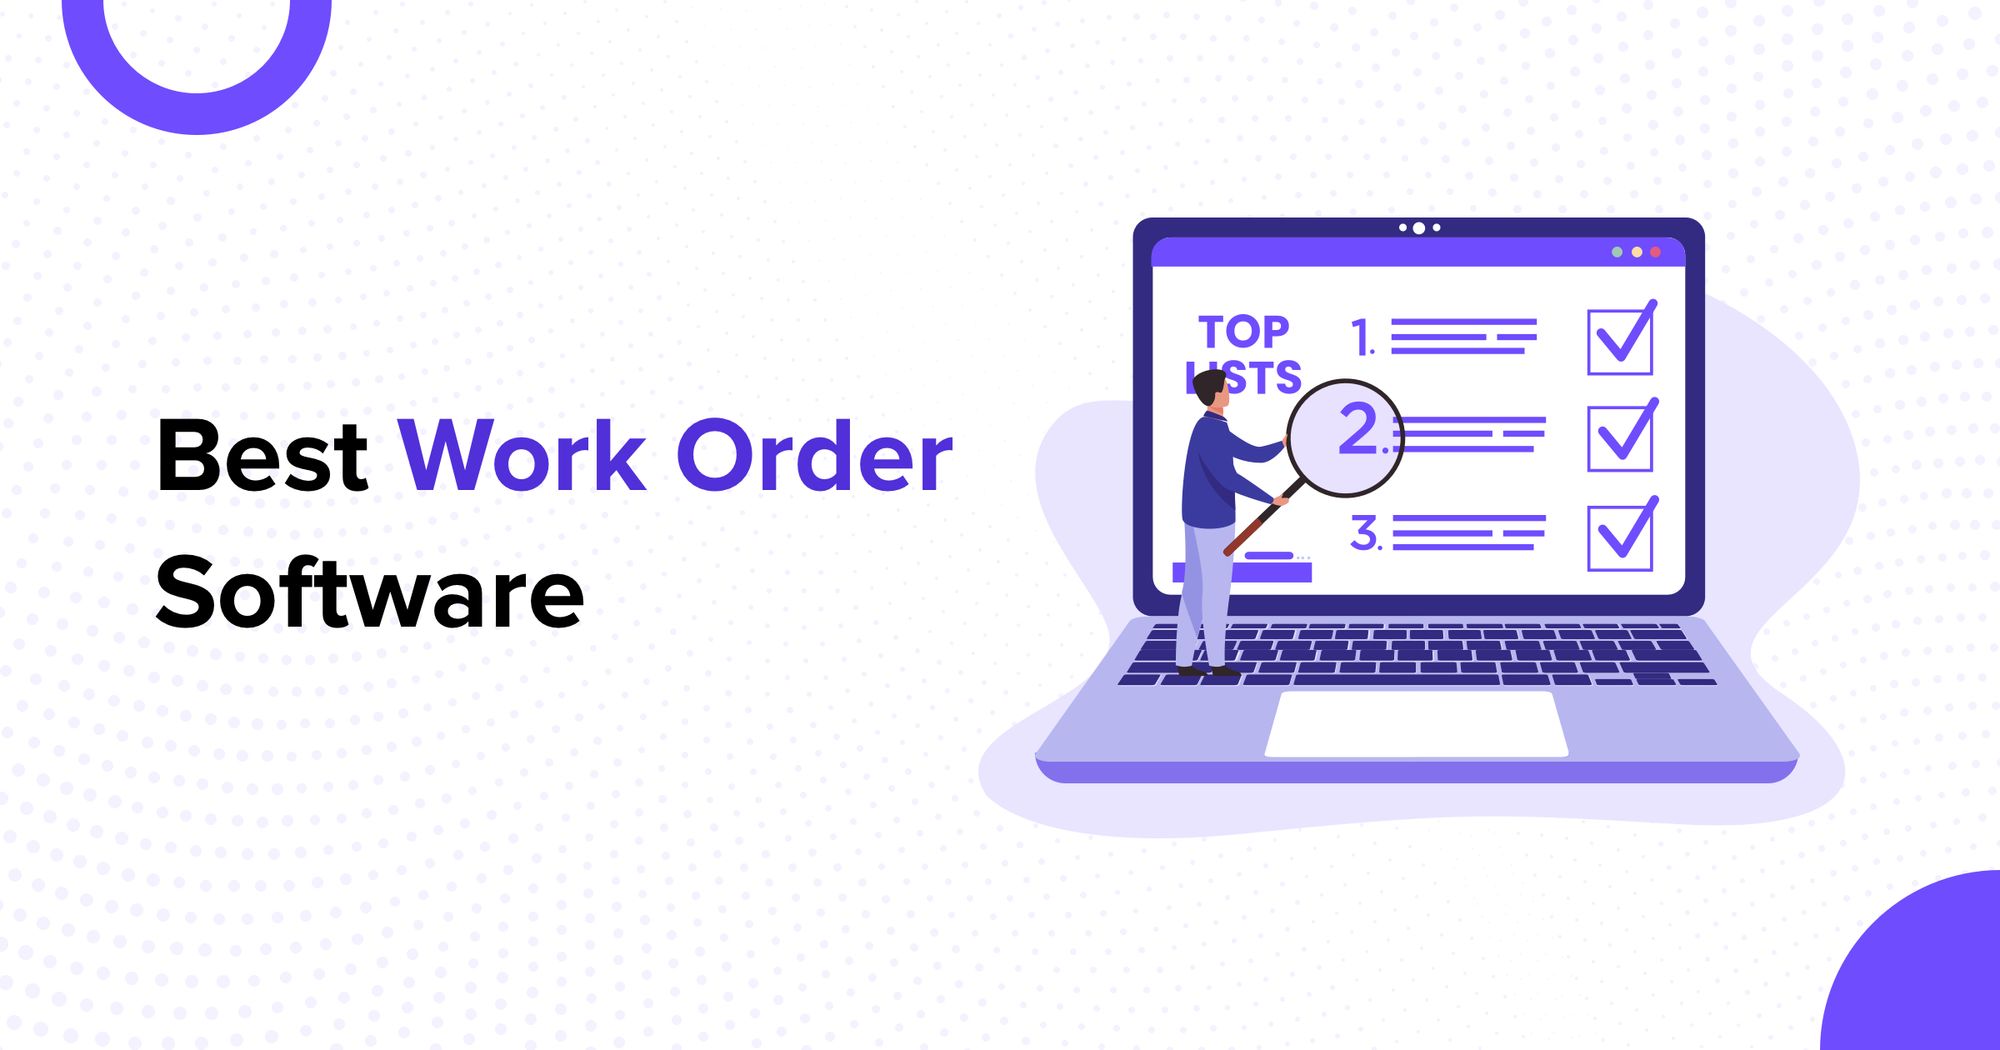 Best Work Order Software in 2022